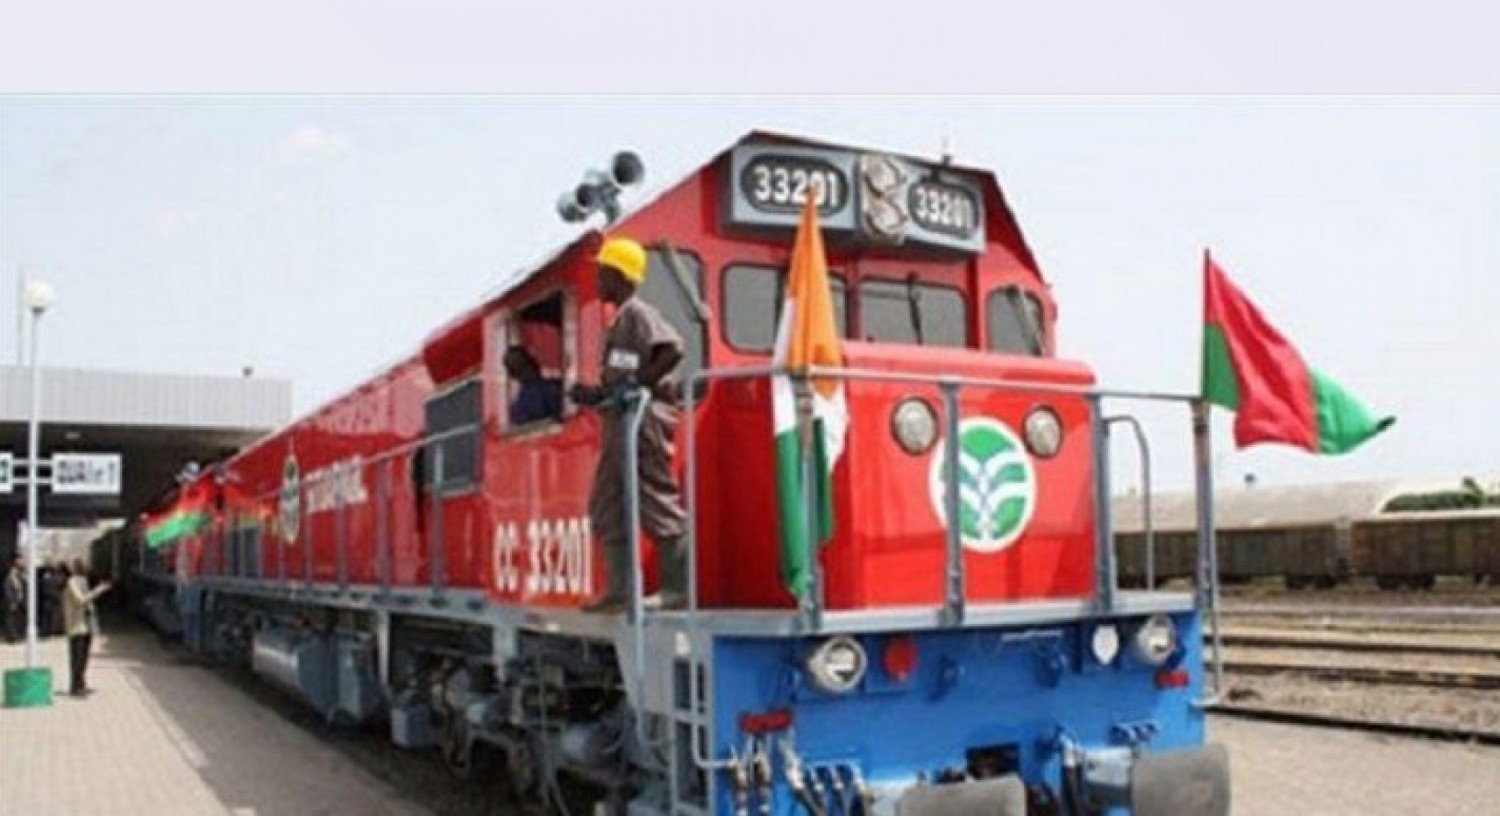 Côte d'Ivoire-Burkina Faso : Après un incident à Kan, rétablissement des circulations ferroviaires chez Sitarail